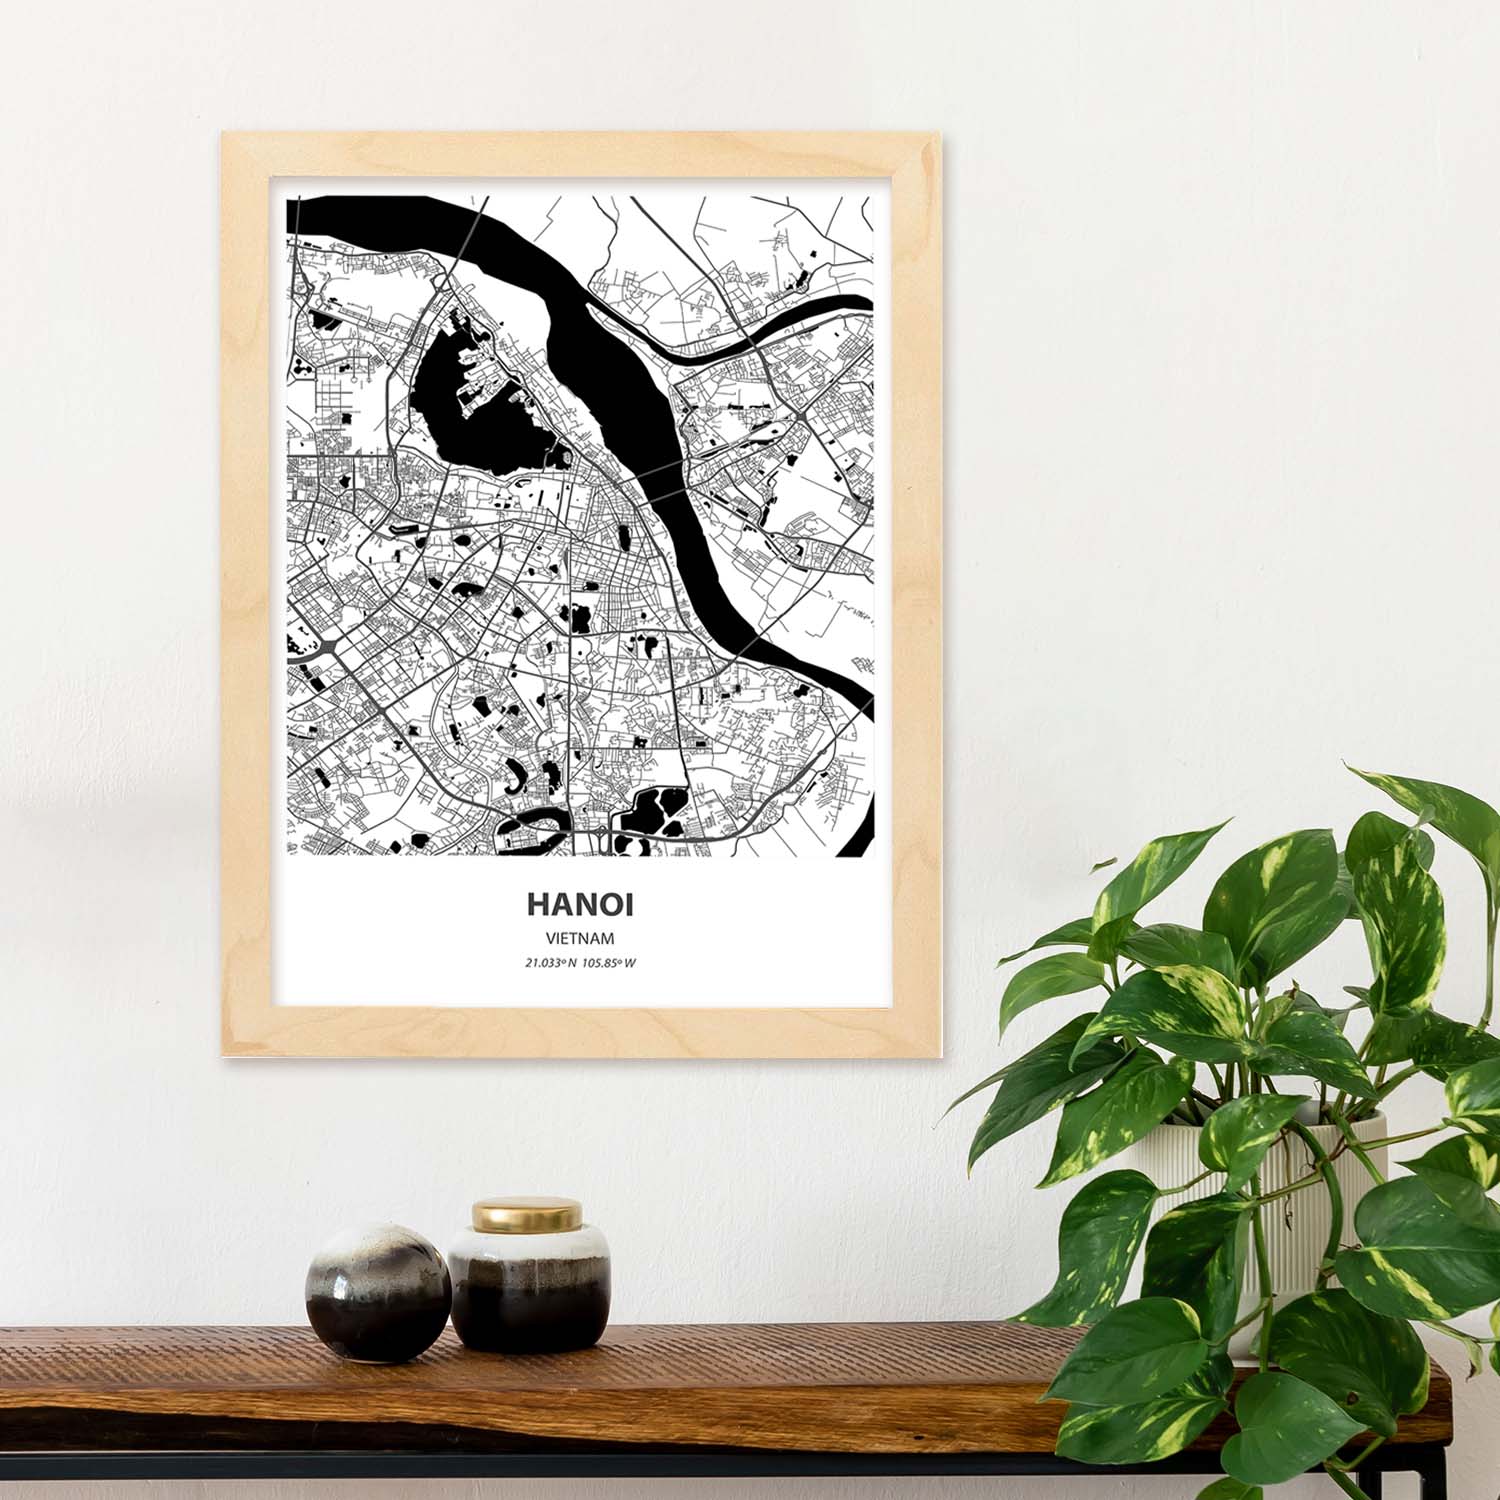 Poster con mapa de Hanoi - Vietnam. Láminas de ciudades de Asia con mares y ríos en color negro.-Artwork-Nacnic-Nacnic Estudio SL